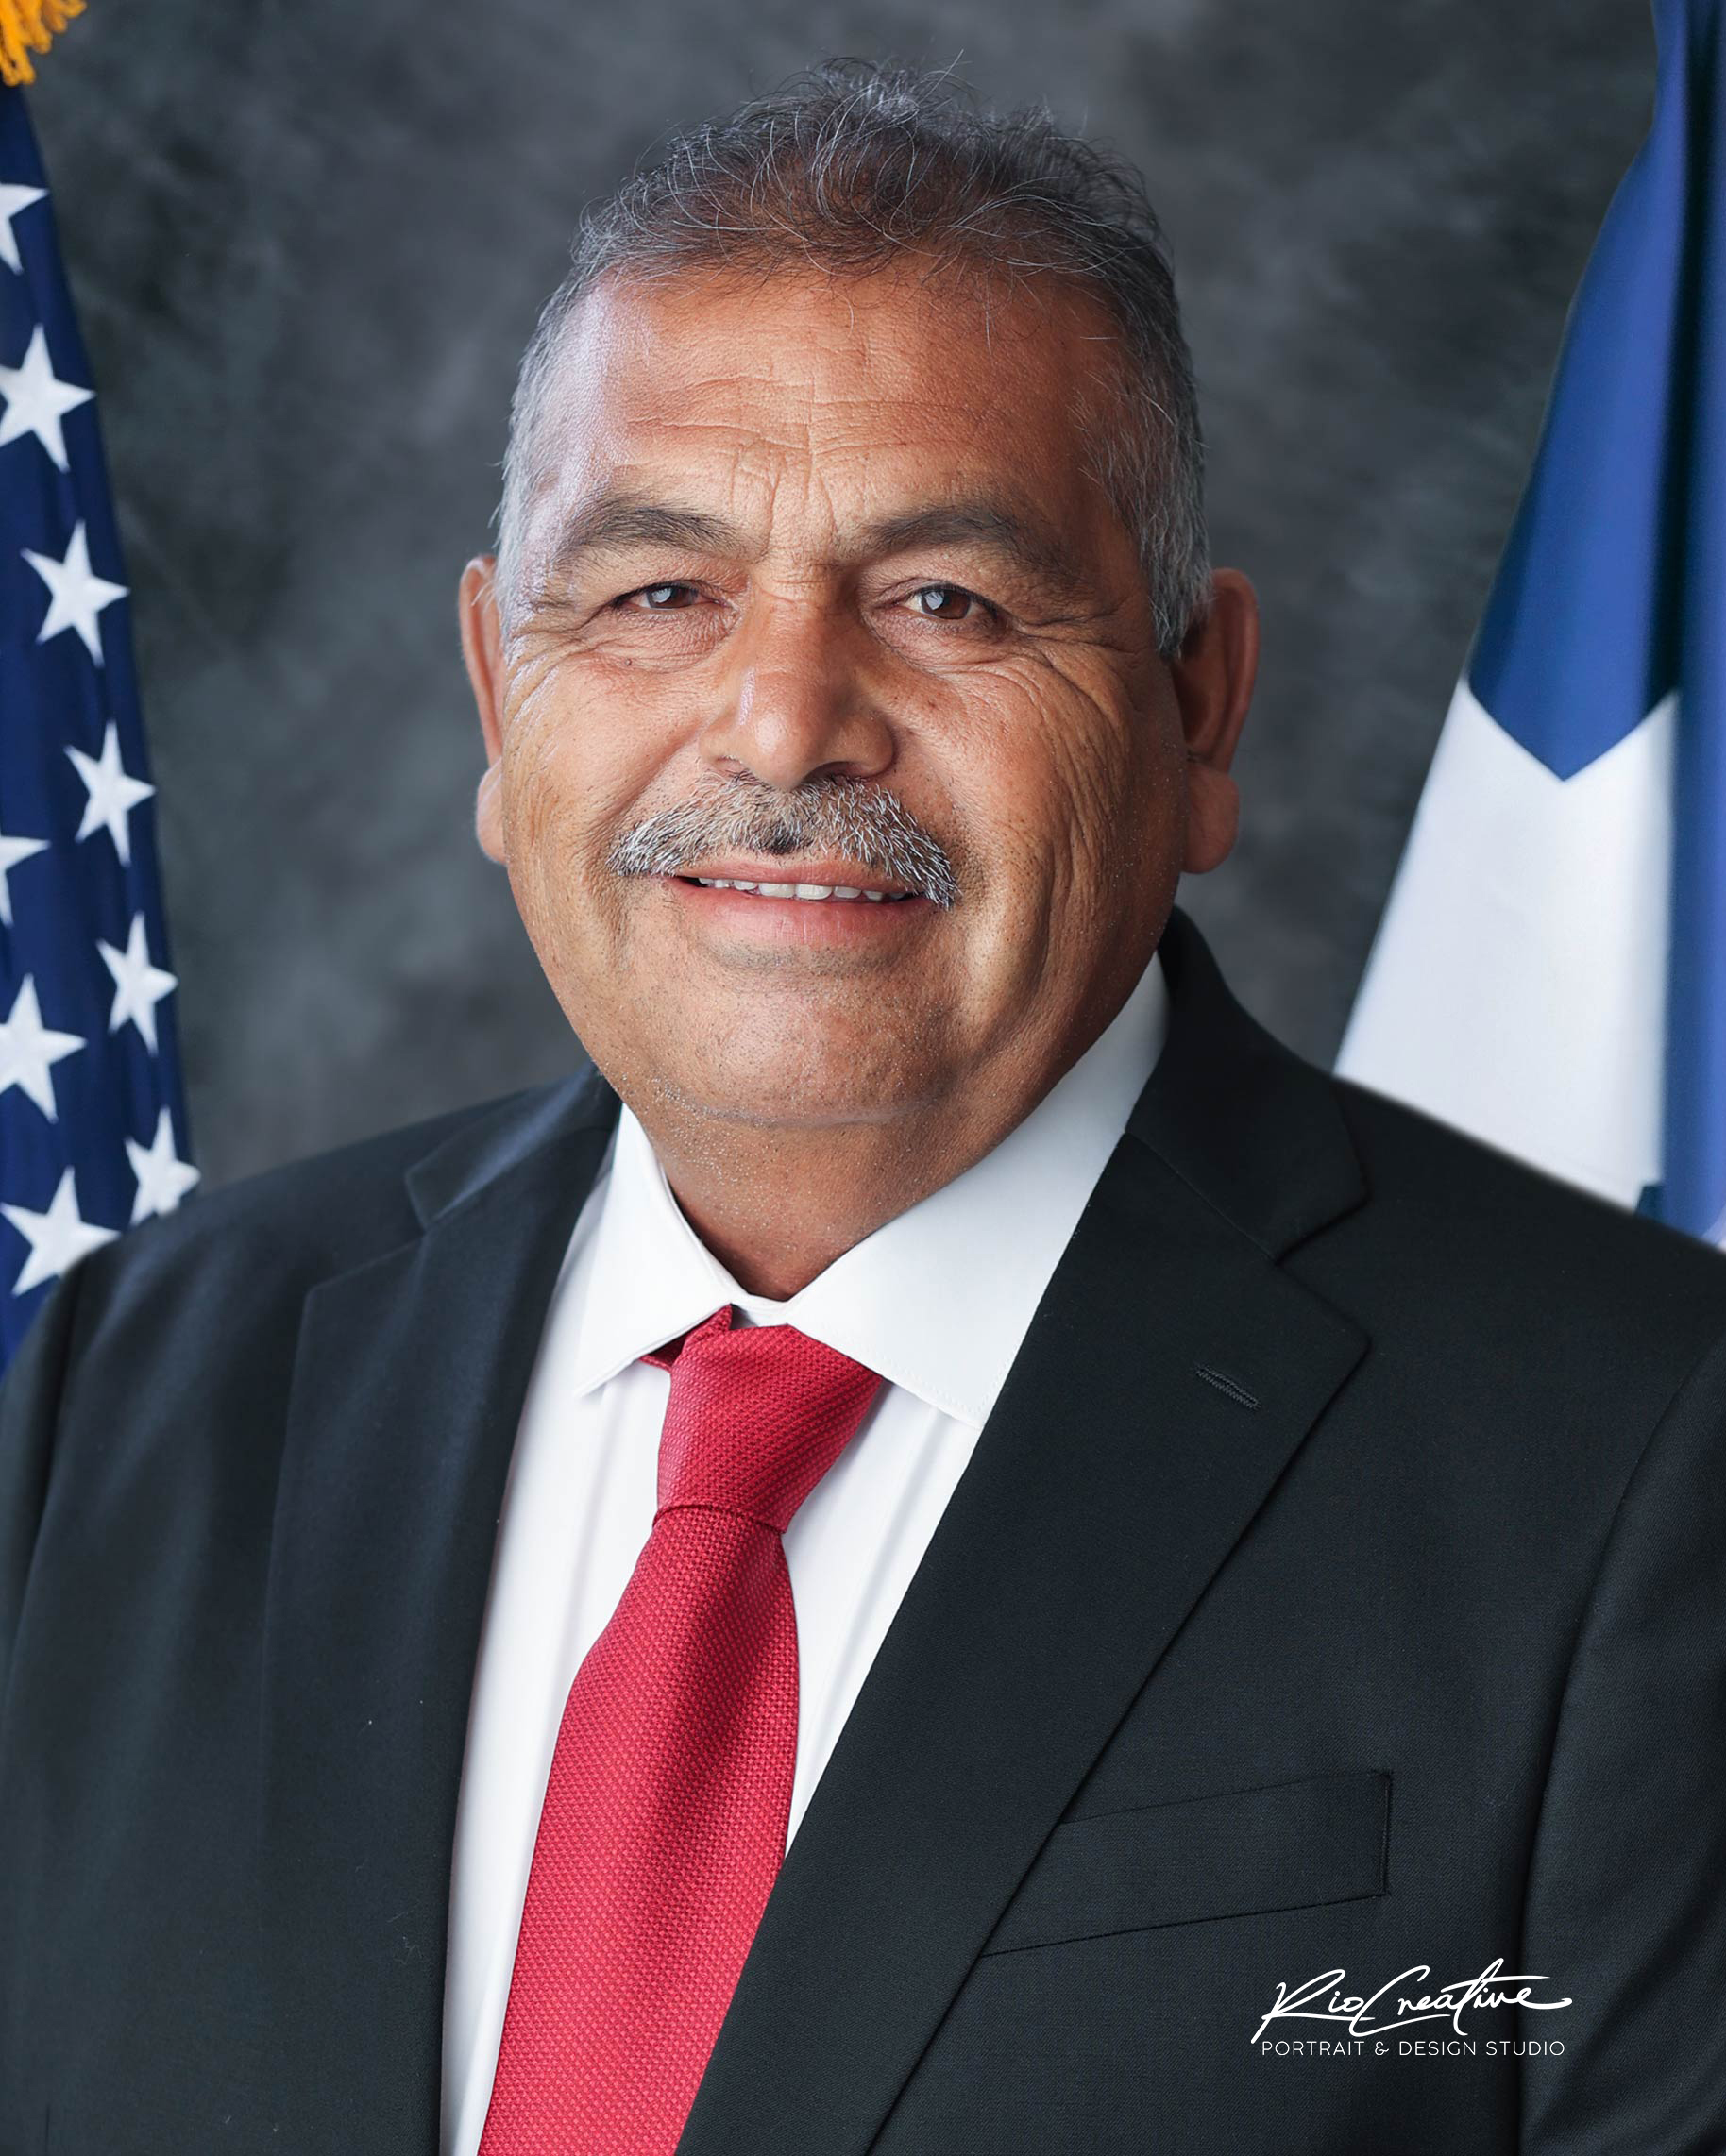 Councilman Benito Hernandez